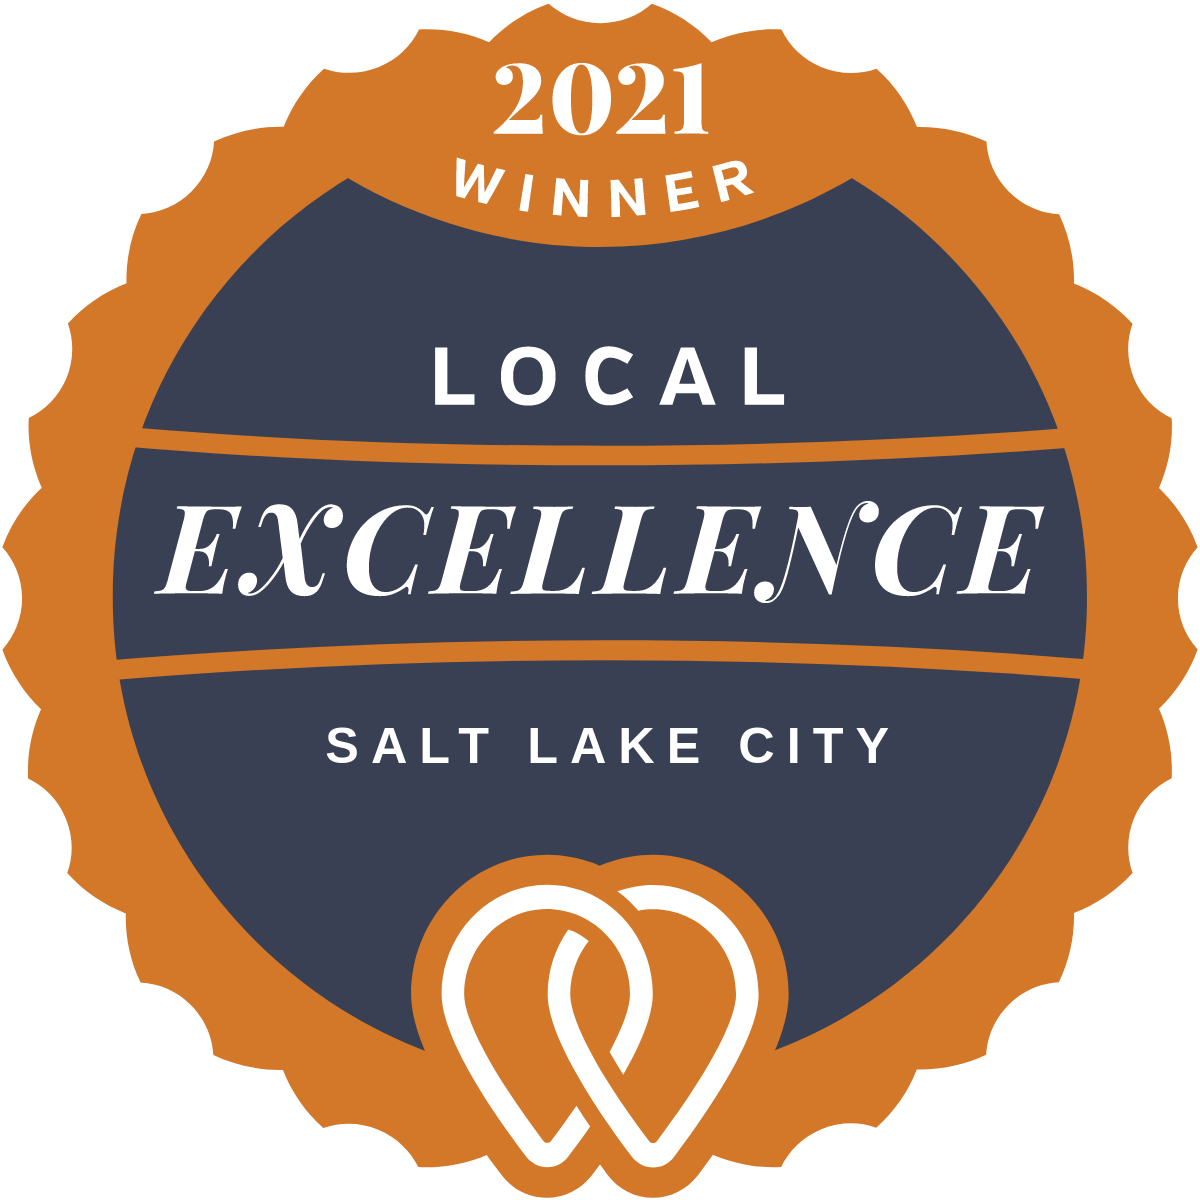 2021 Local Excellence Winner in Salt Lake City, UT